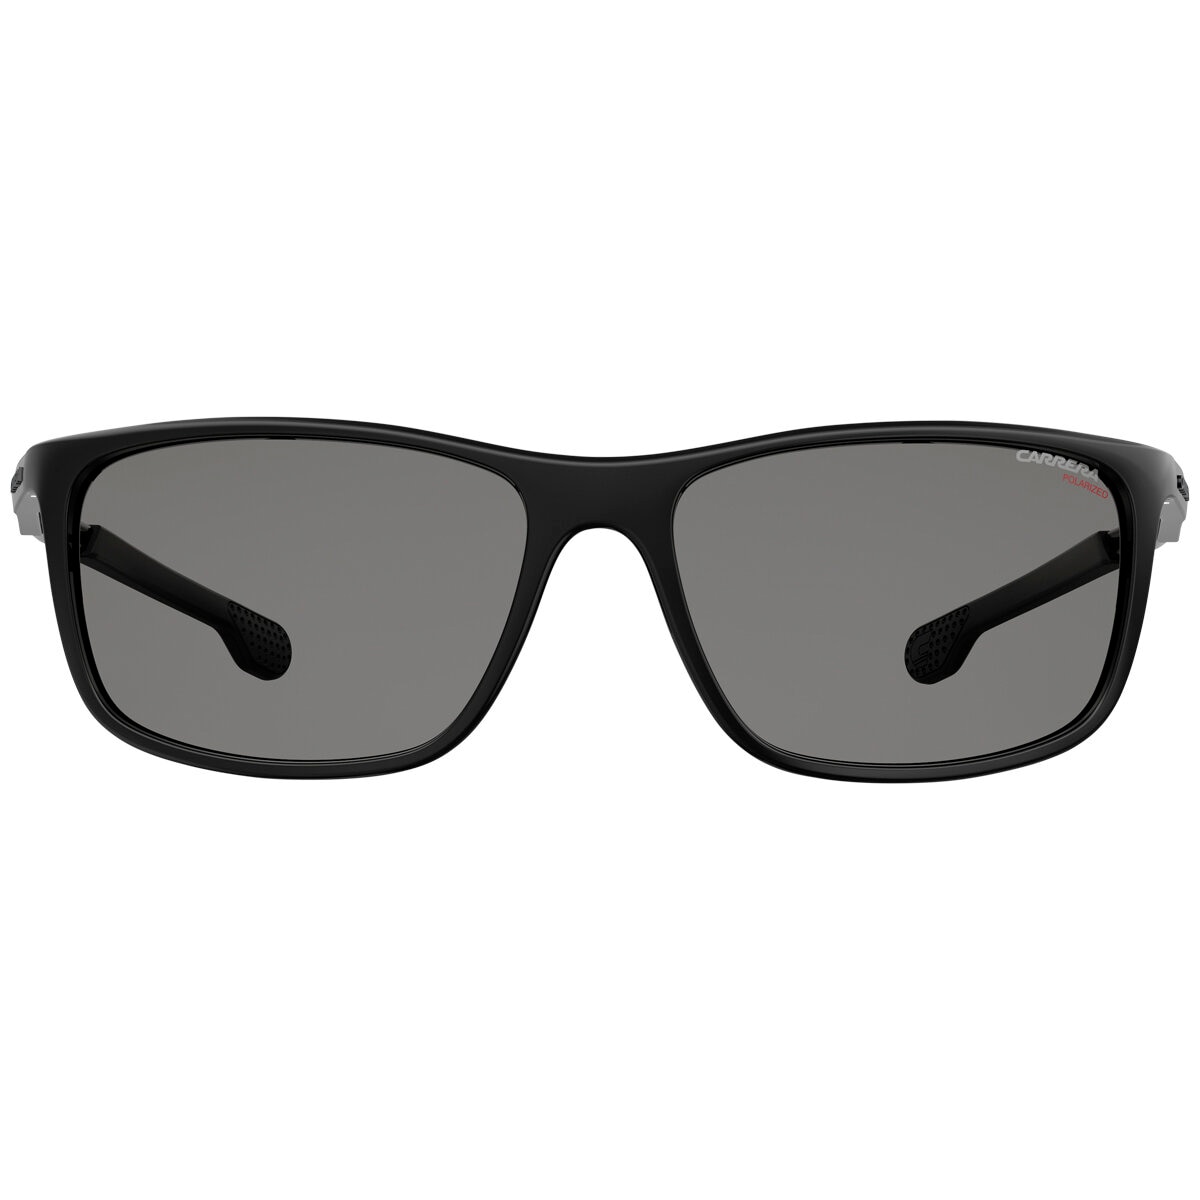 Carrera 4013SBL Men’s Sunglasses